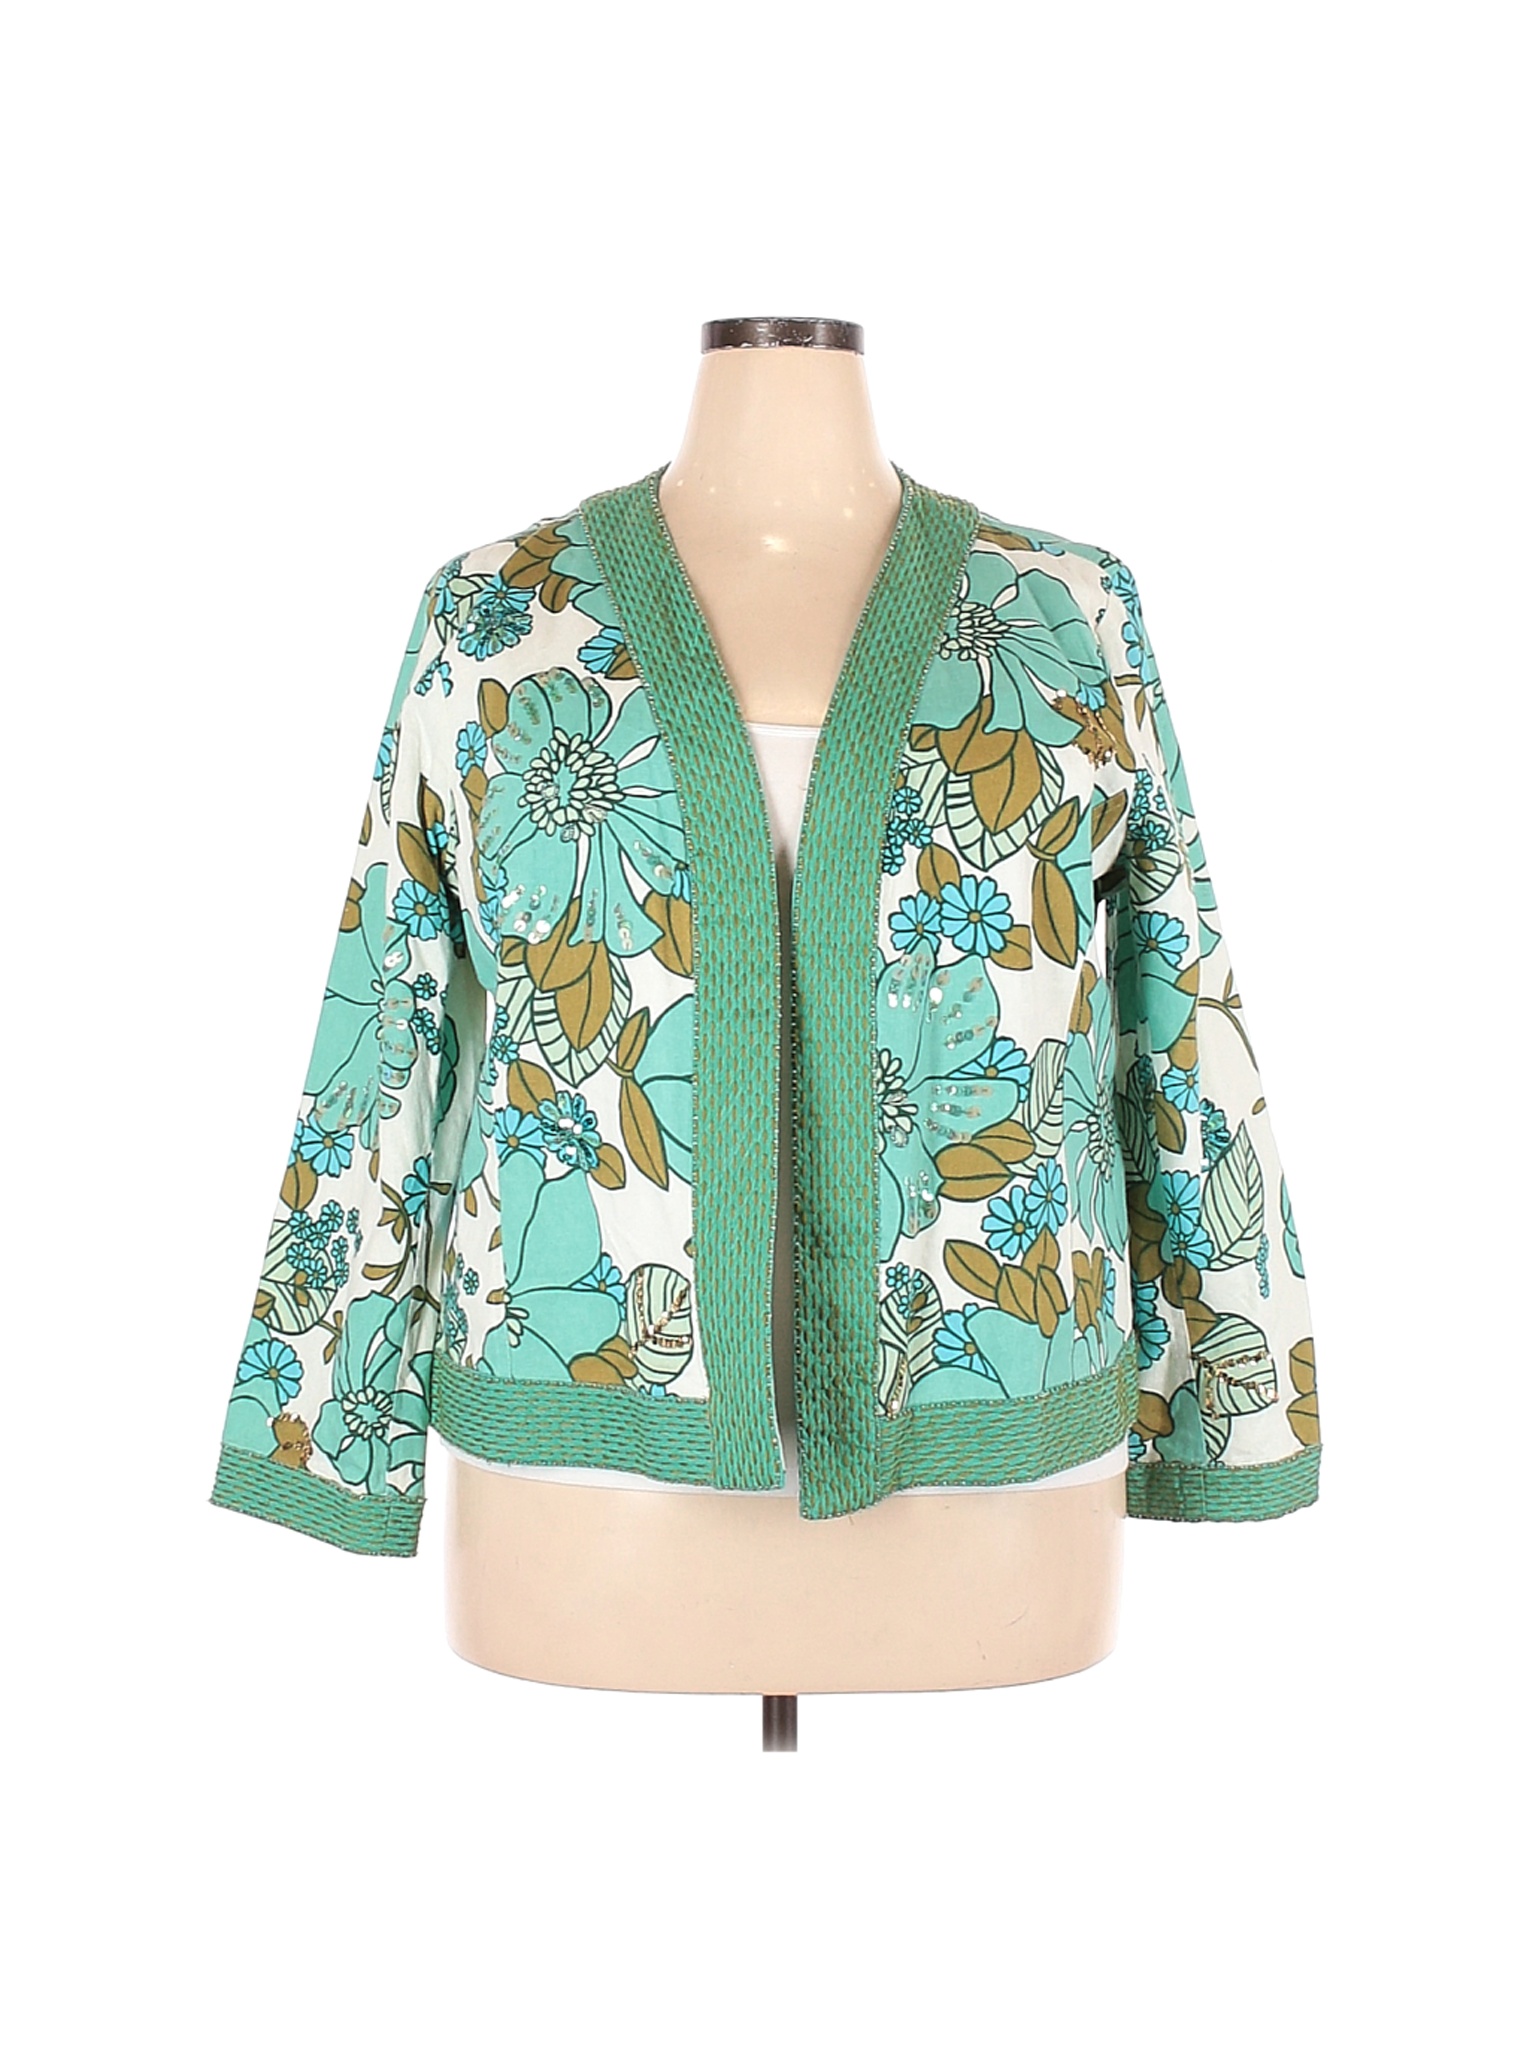 Silkland Women Green Kimono 2X Plus | eBay